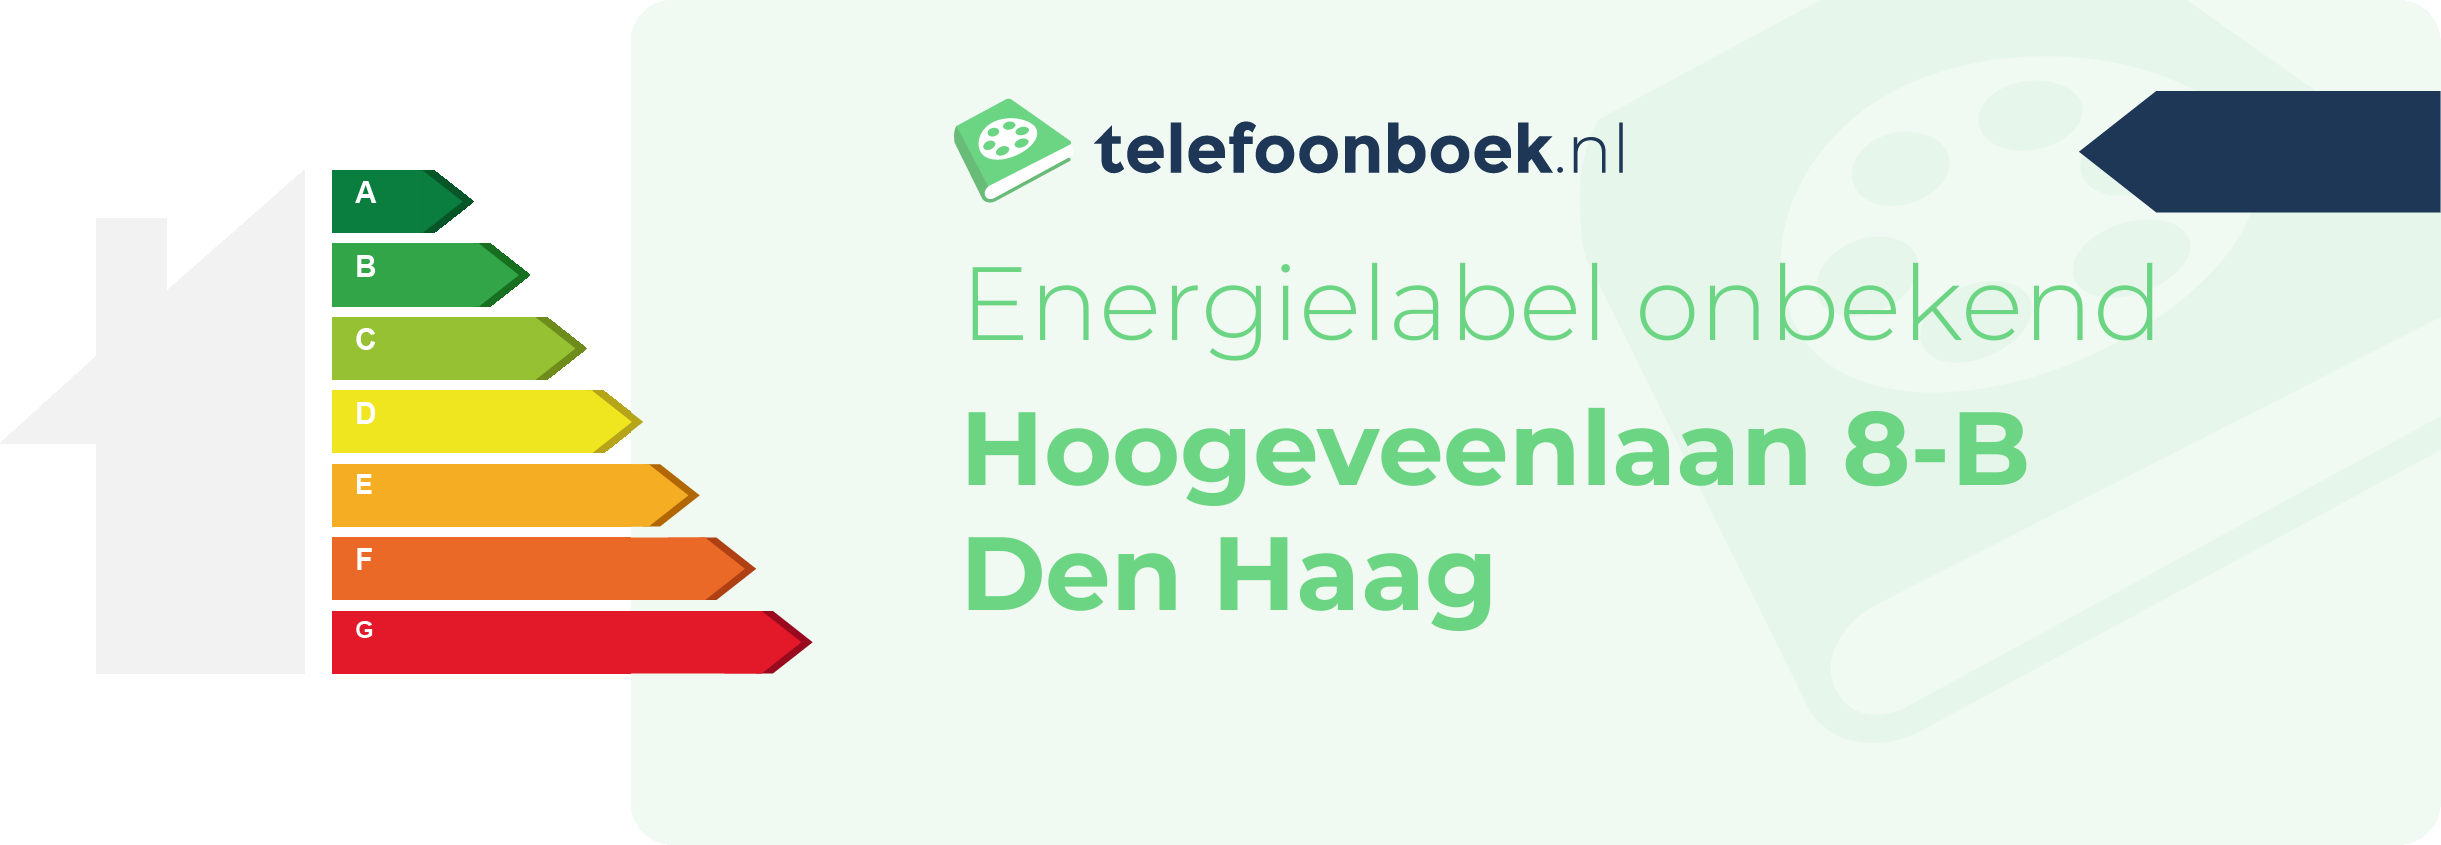 Energielabel Hoogeveenlaan 8-B Den Haag